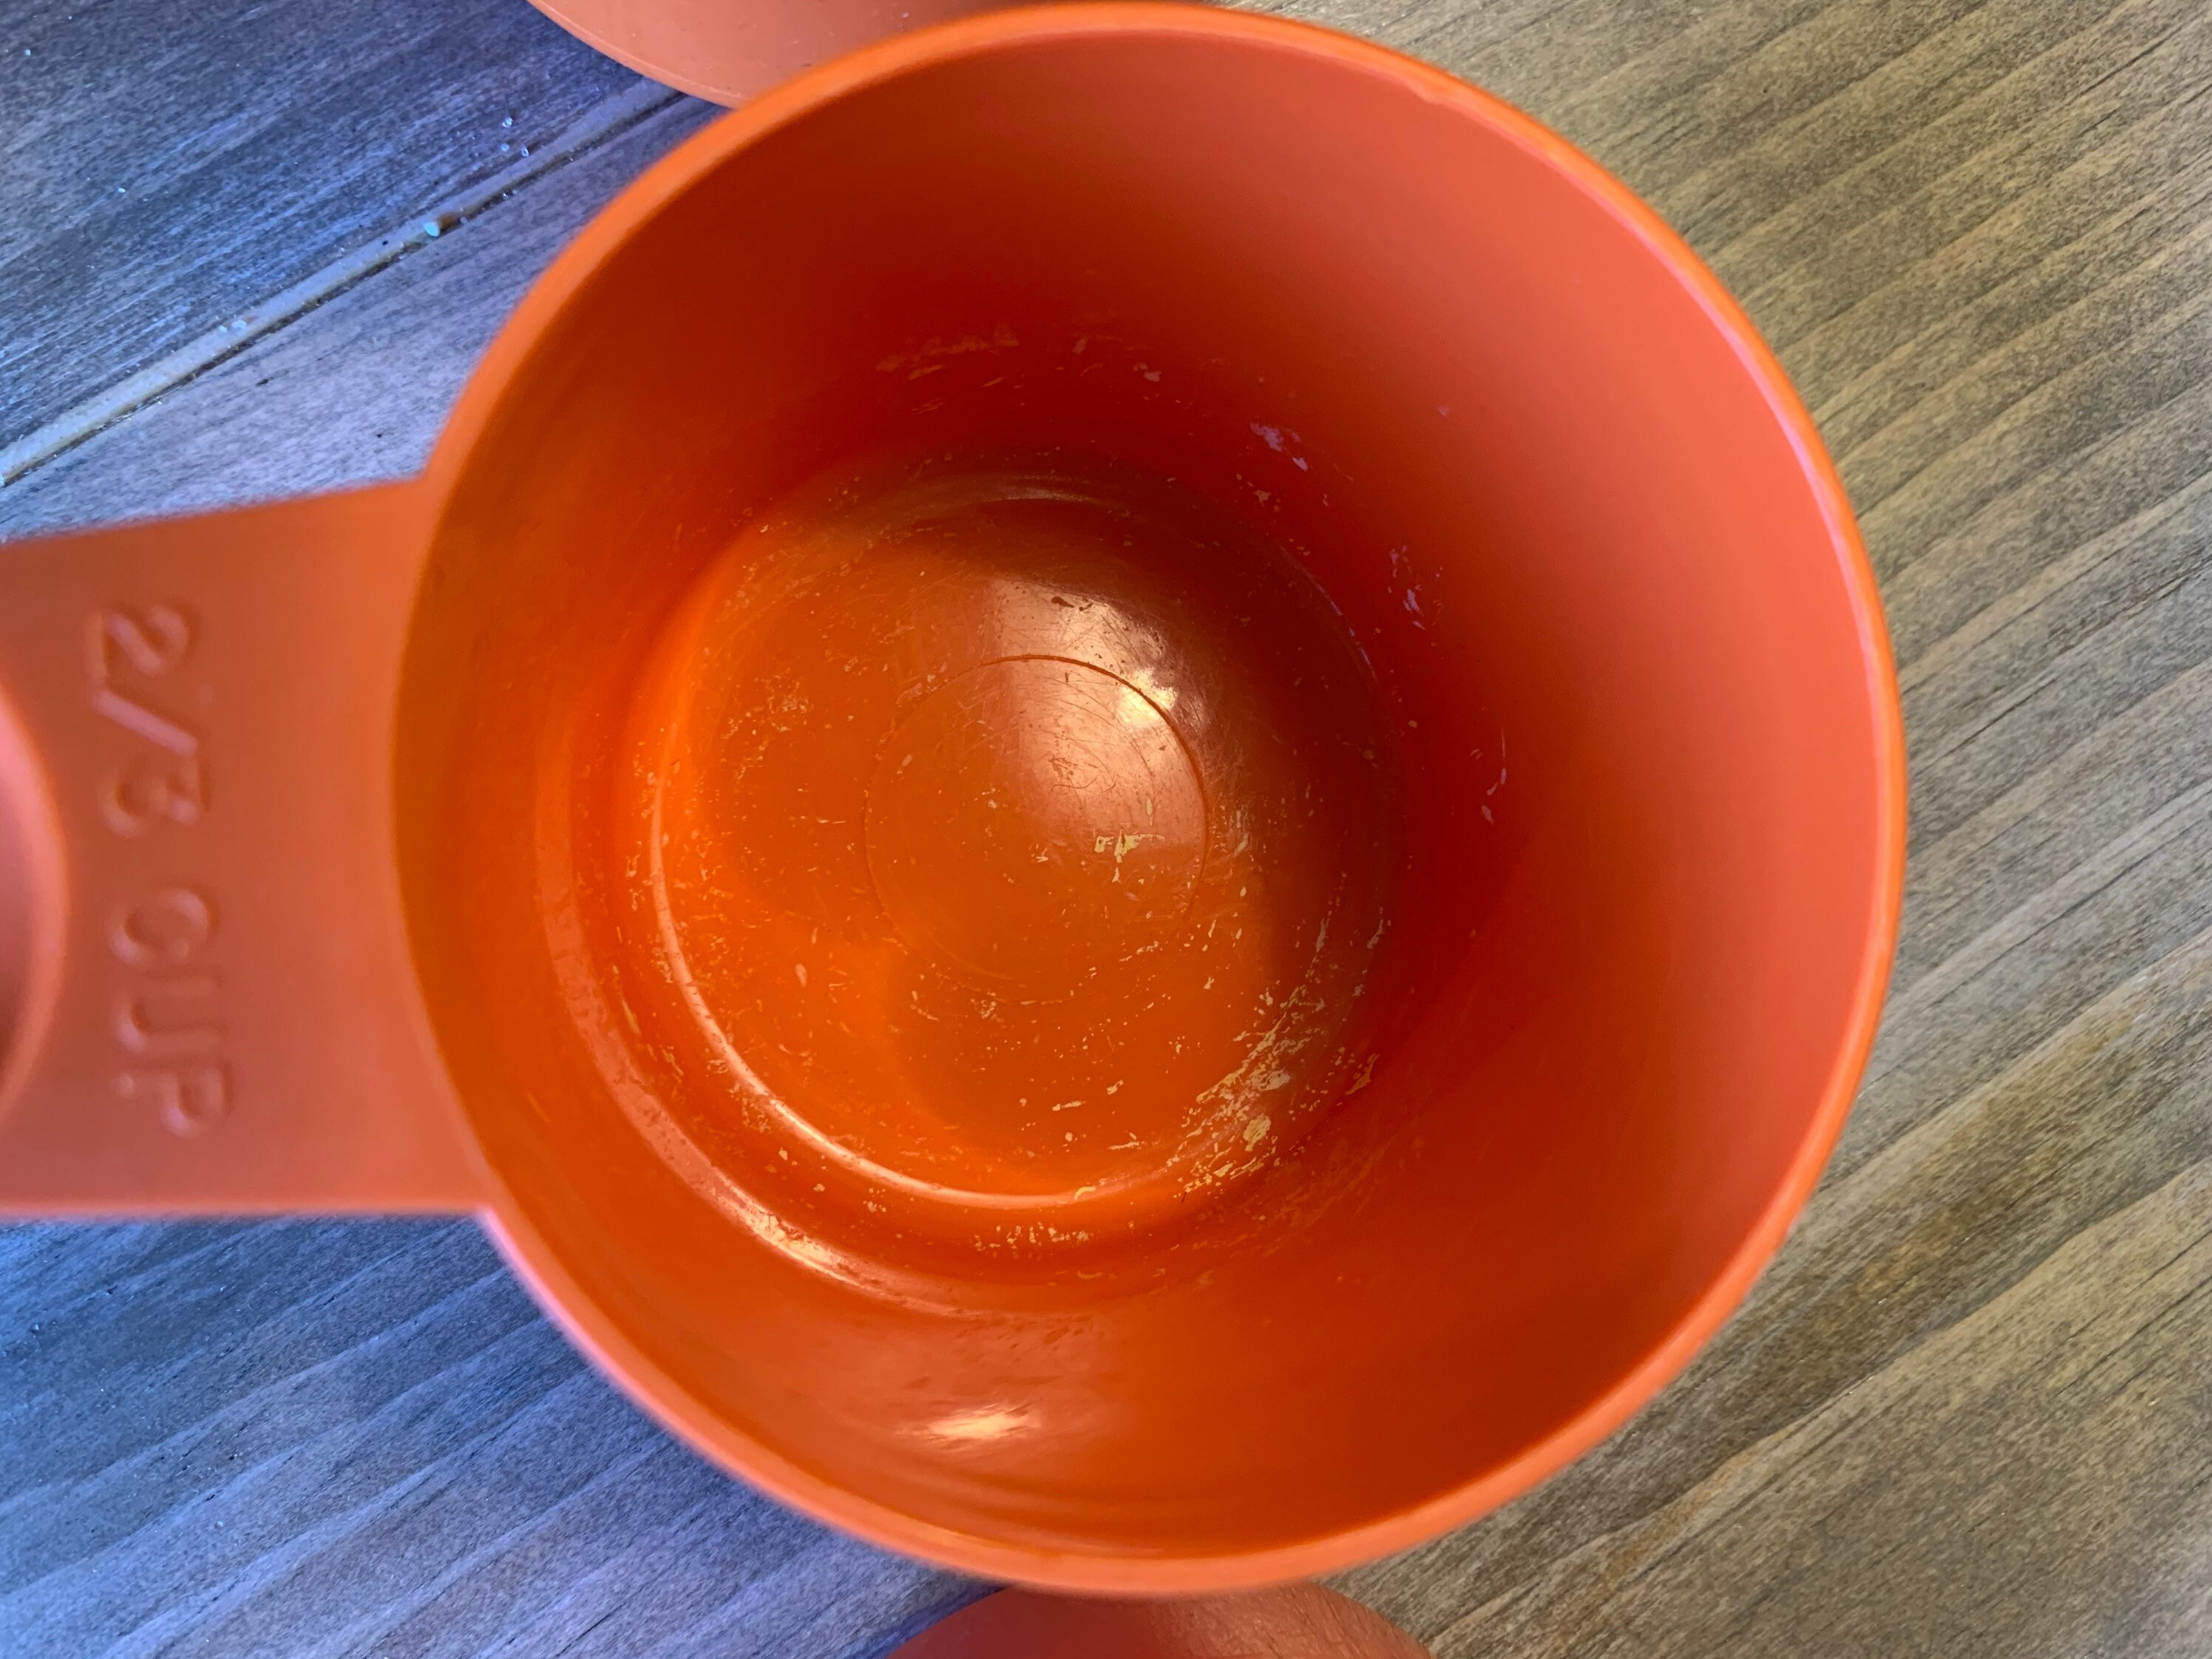 Orange Tupperware Vintage Measuring Cups: 61 ppm Cadmium. Cadmium